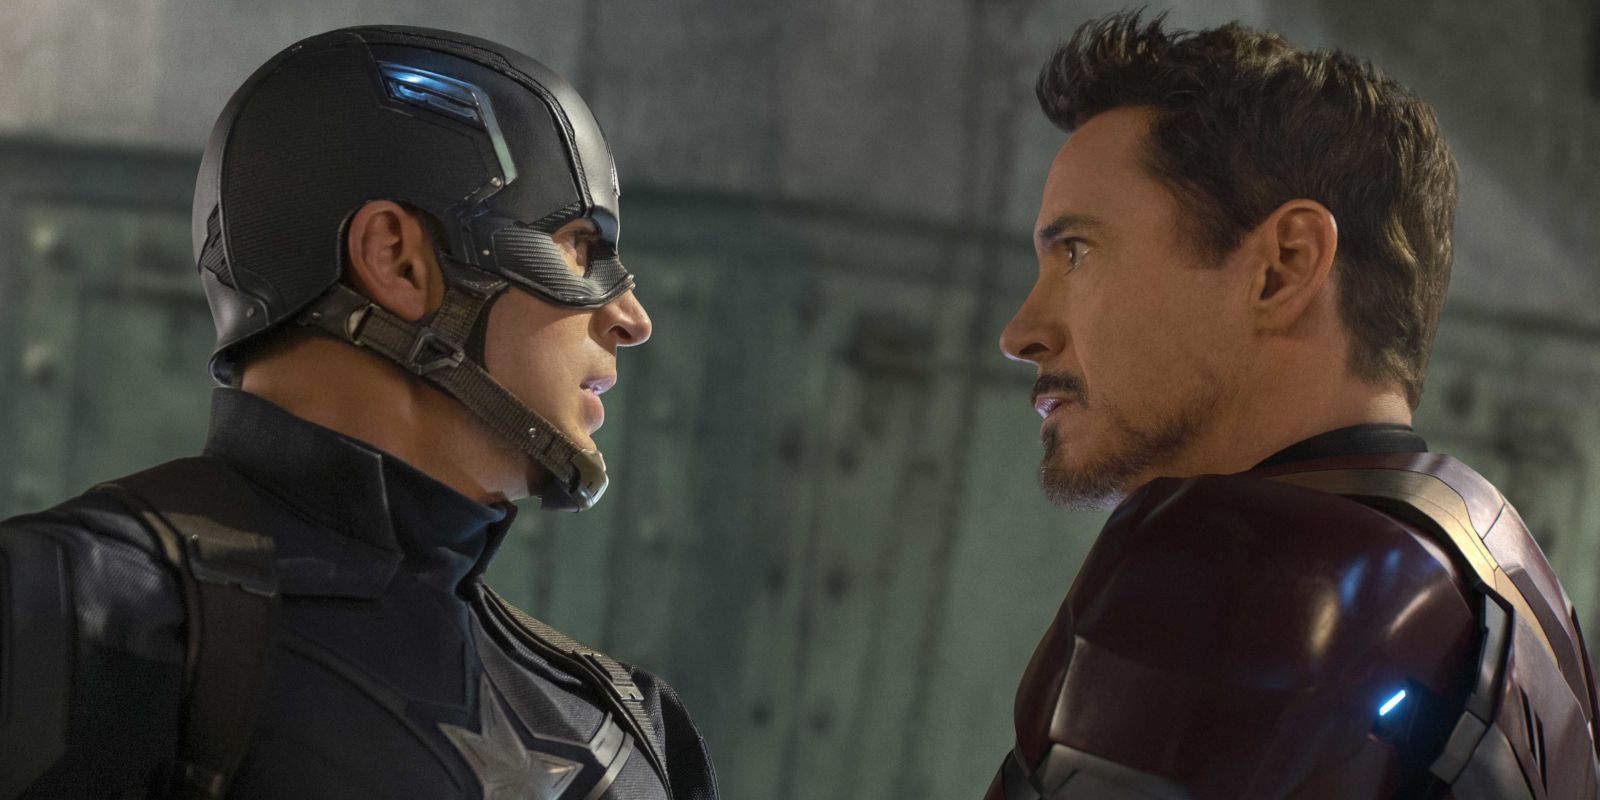 Chris Evans as Captain America and Robert Downey Jr. as Iron Man in Captain America: Civil War